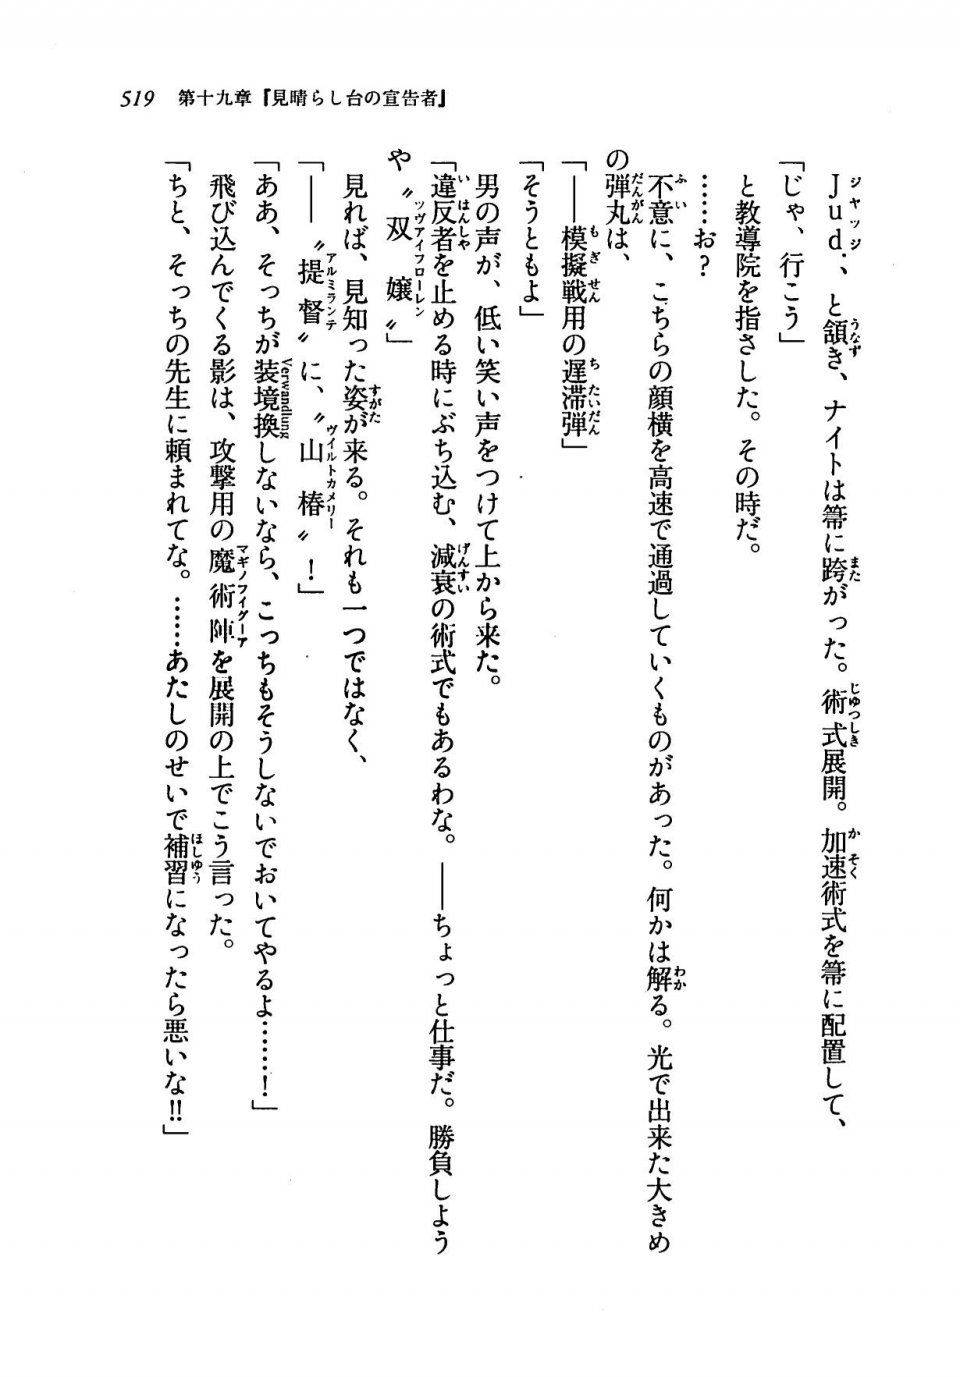 Kyoukai Senjou no Horizon LN Vol 19(8A) - Photo #519